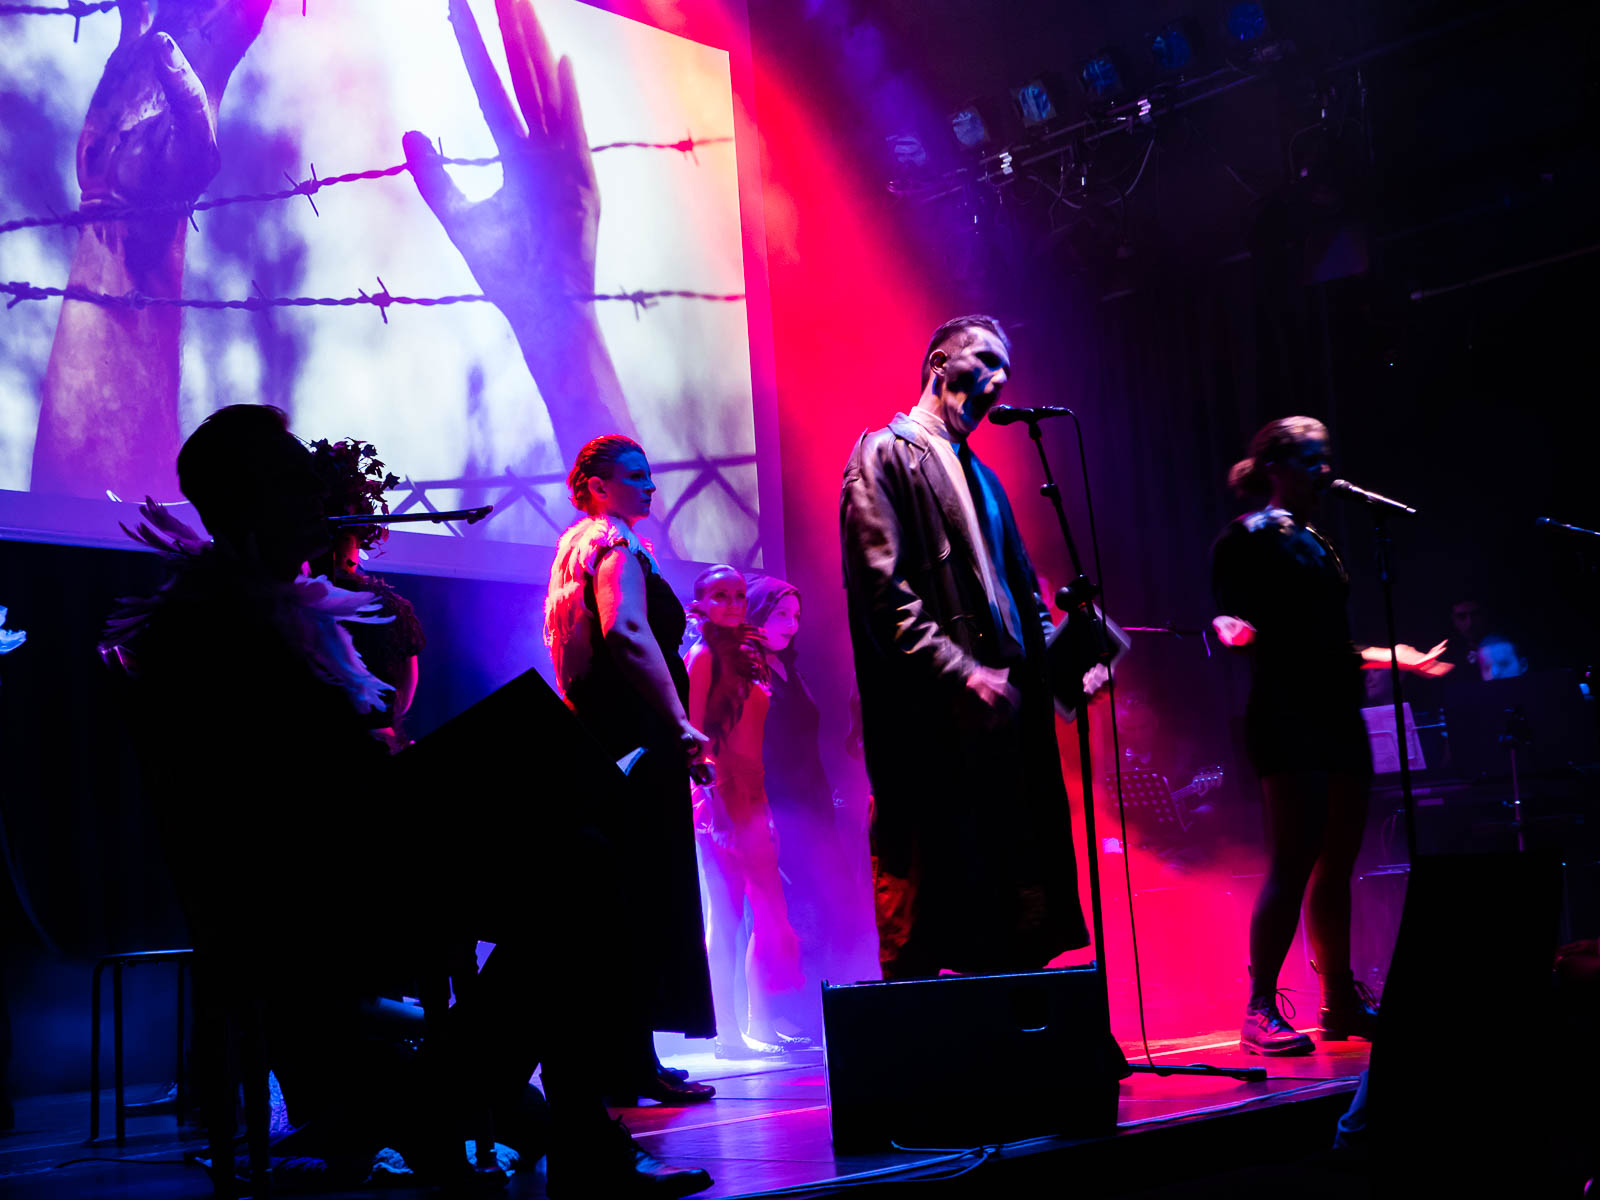 Eine Gruppe verkleideter Sänger und Sängerinnen steht auf einer Bühne, die in pinkes Licht getaucht ist. Im Hintergrund sieht man eine Projektion von Händen, die durch einen Stacheldrahtzaun greifen.